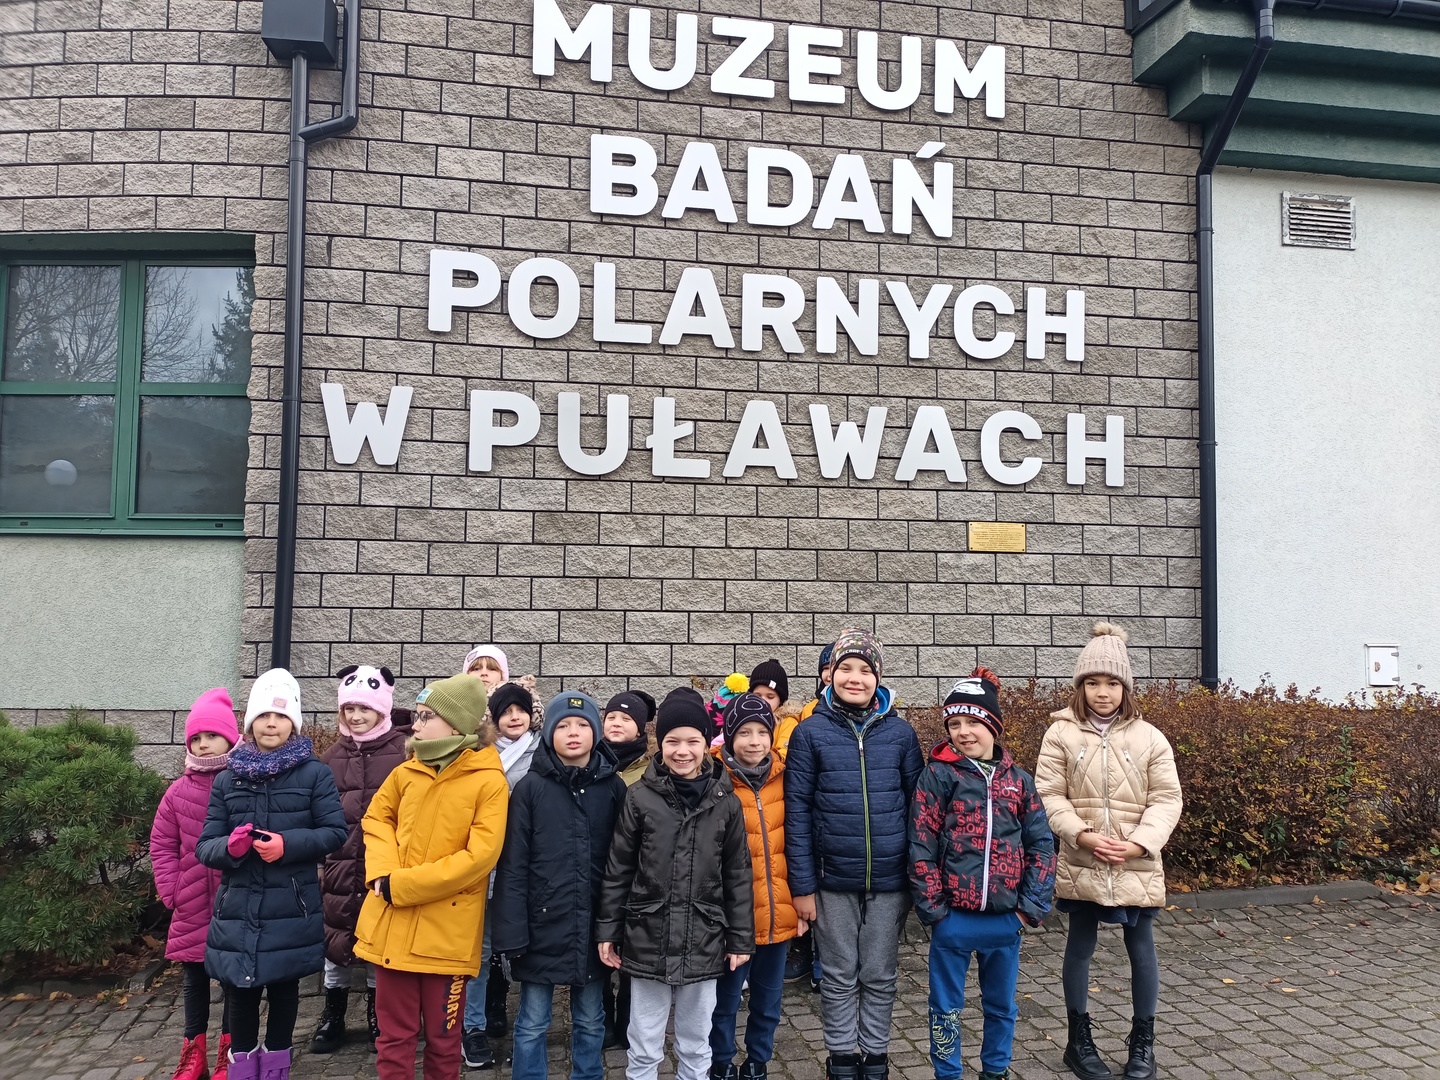 Muzeum Badań Polarnych w Puławach.jpg